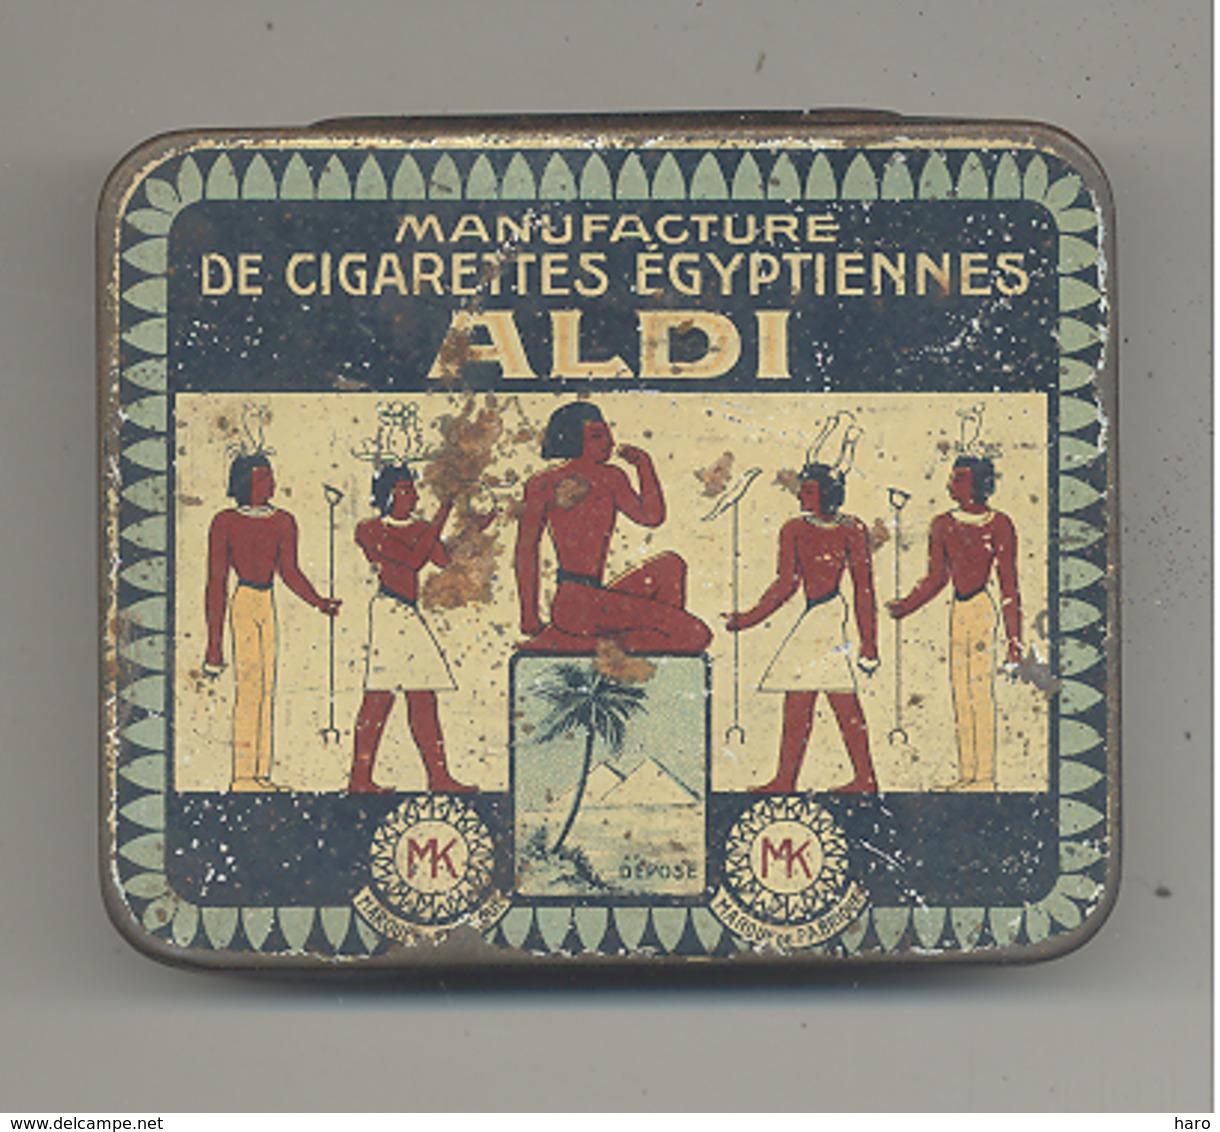 Boîte De Cigarettes Métallique ( VIDE) "ALDI" Manufacture De Cigarettes égyptiennes - Etuis à Cigarettes Vides